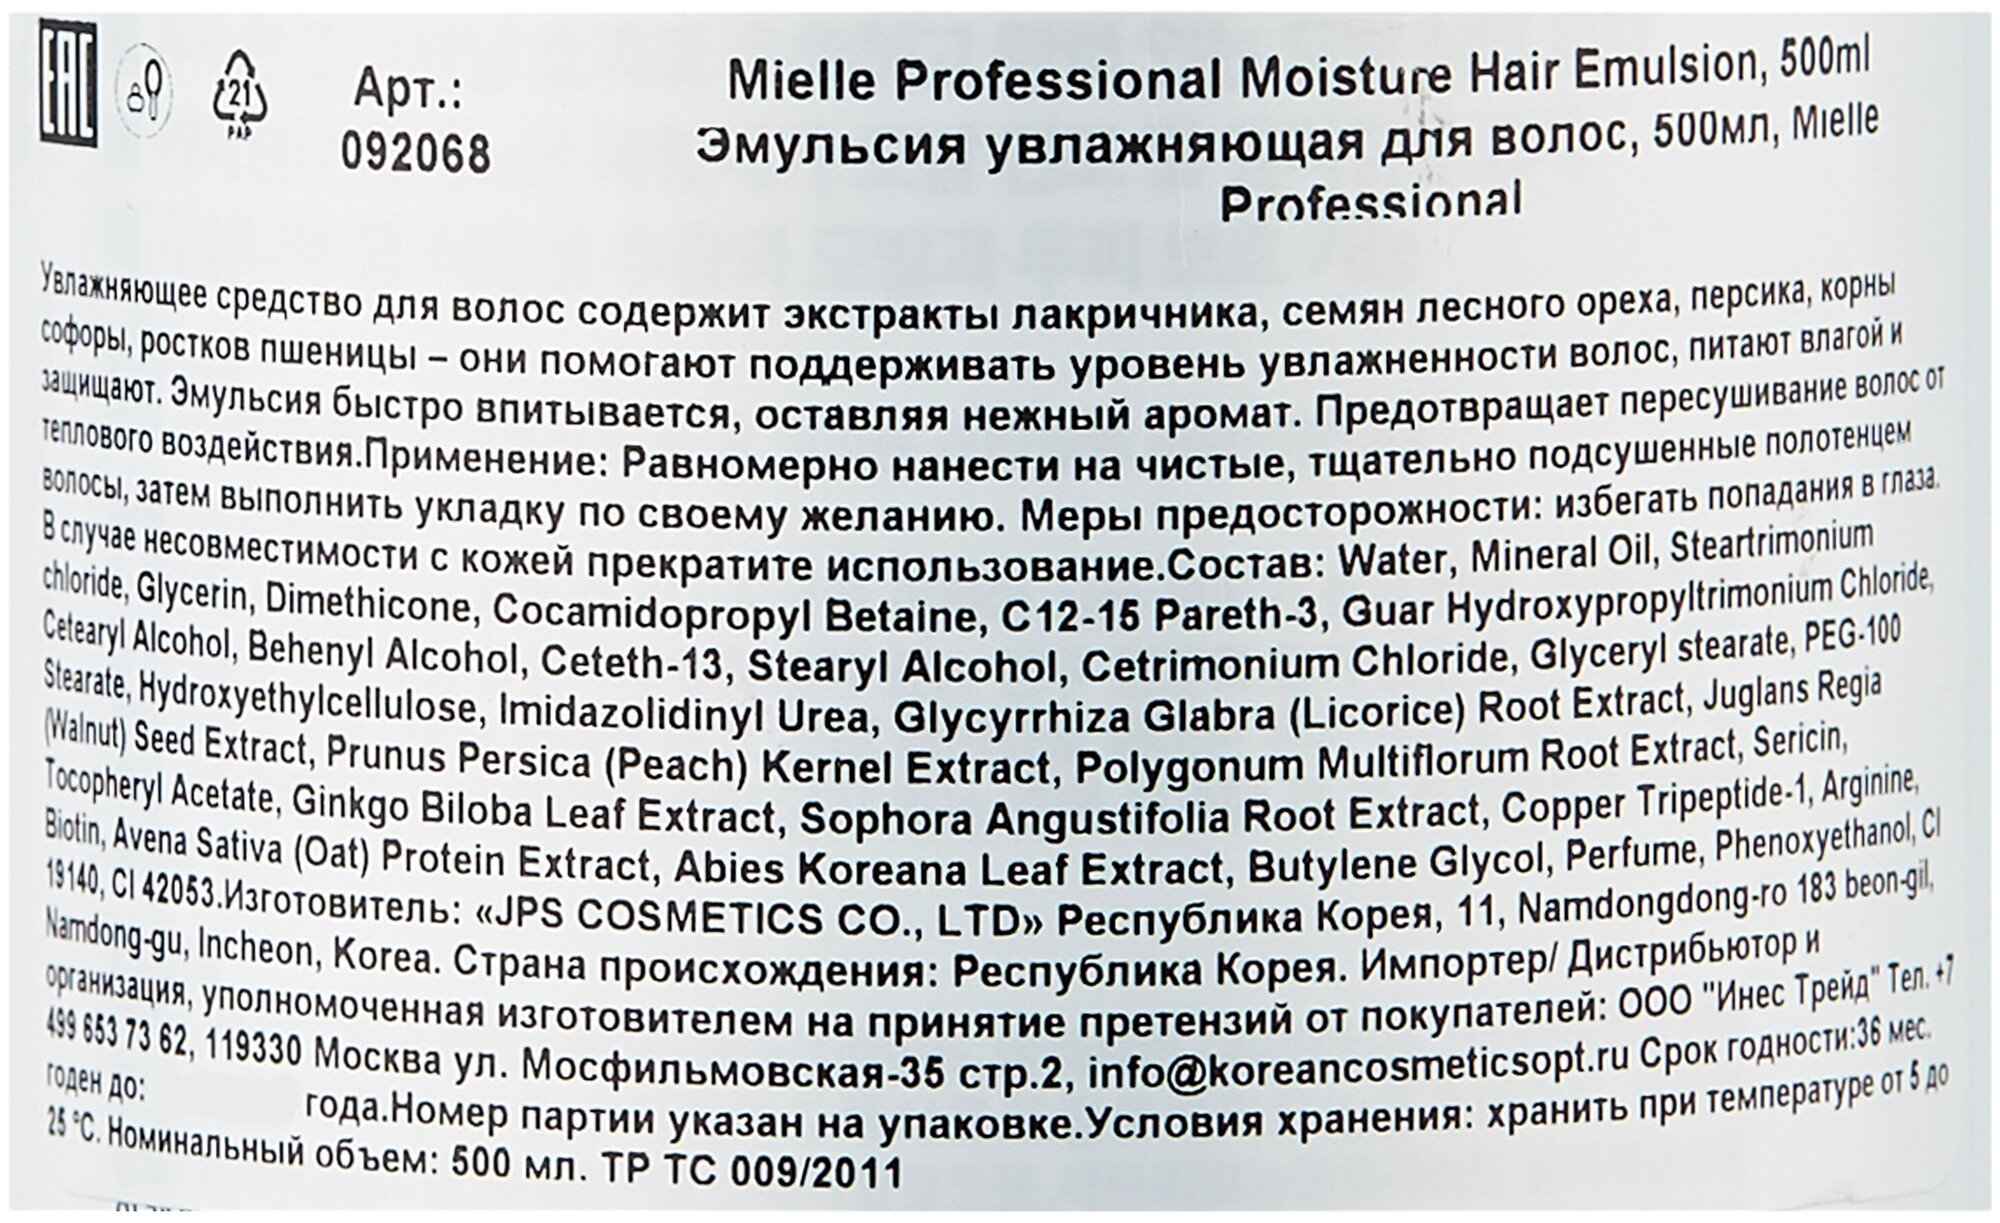 JPS Эмульсия увлажняющая для волос 500 мл (JPS, ) - фото №3